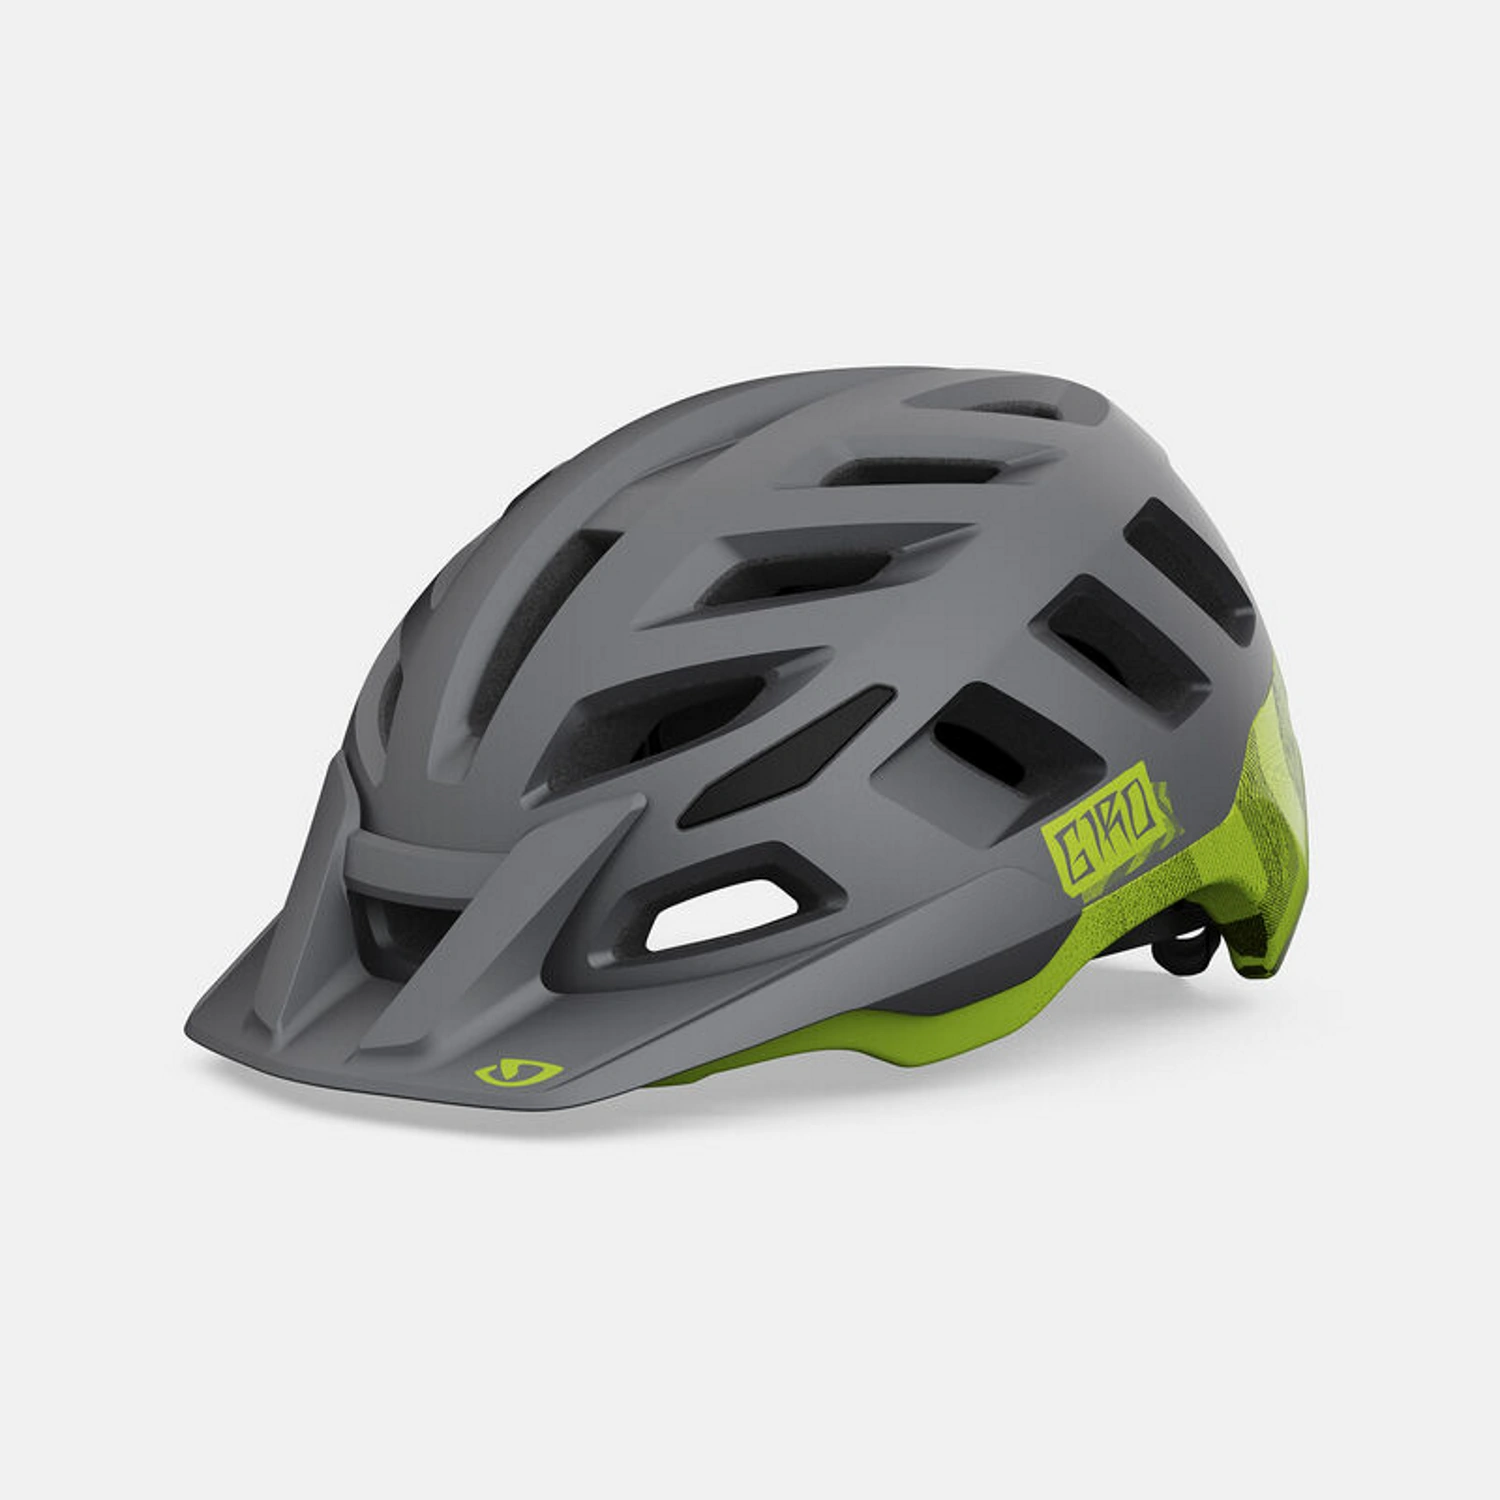 Kask rowerowy górski Giro, szary z zielonymi akcentami, przewiewny, z daszkiem